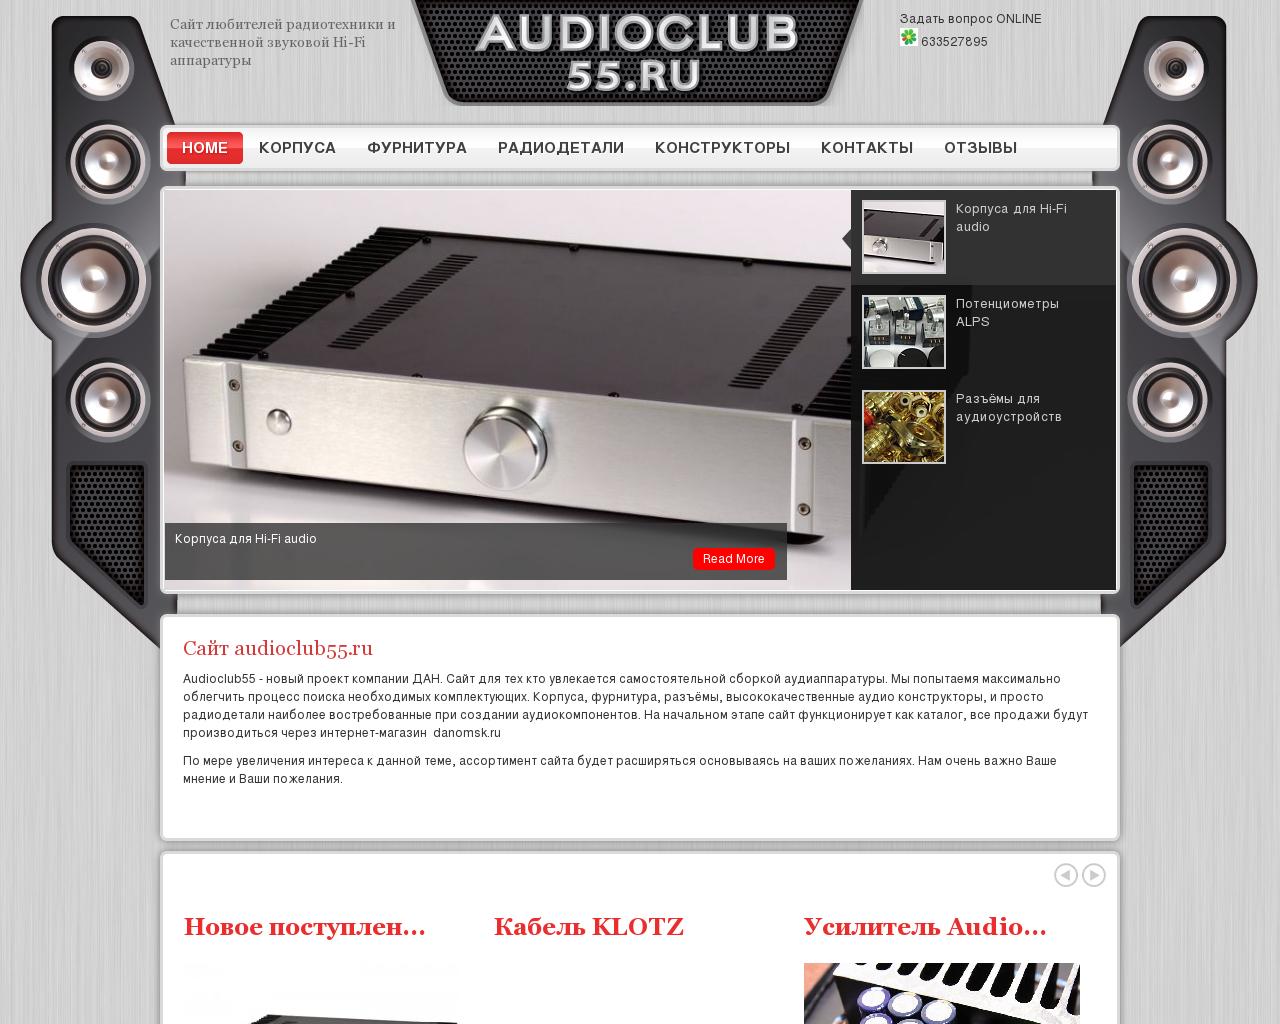 Изображение сайта audioclub55.ru в разрешении 1280x1024